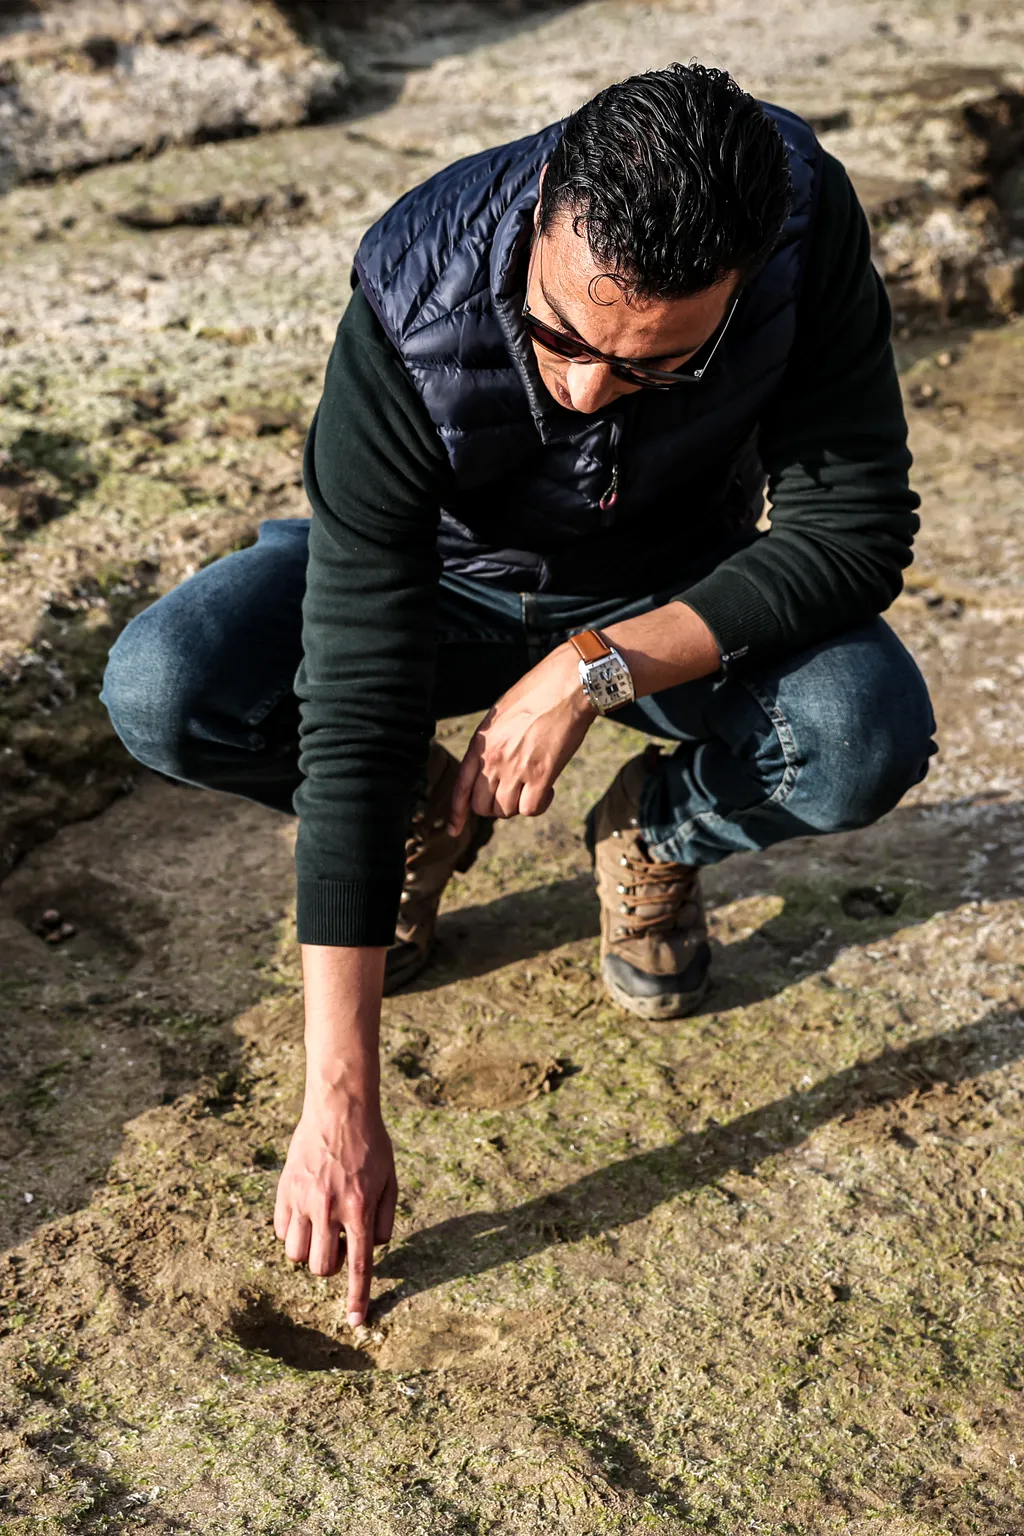 100, ezer, éves, lábnyomokat, találtak, Marokkóban, Marokkó, 100,000, 